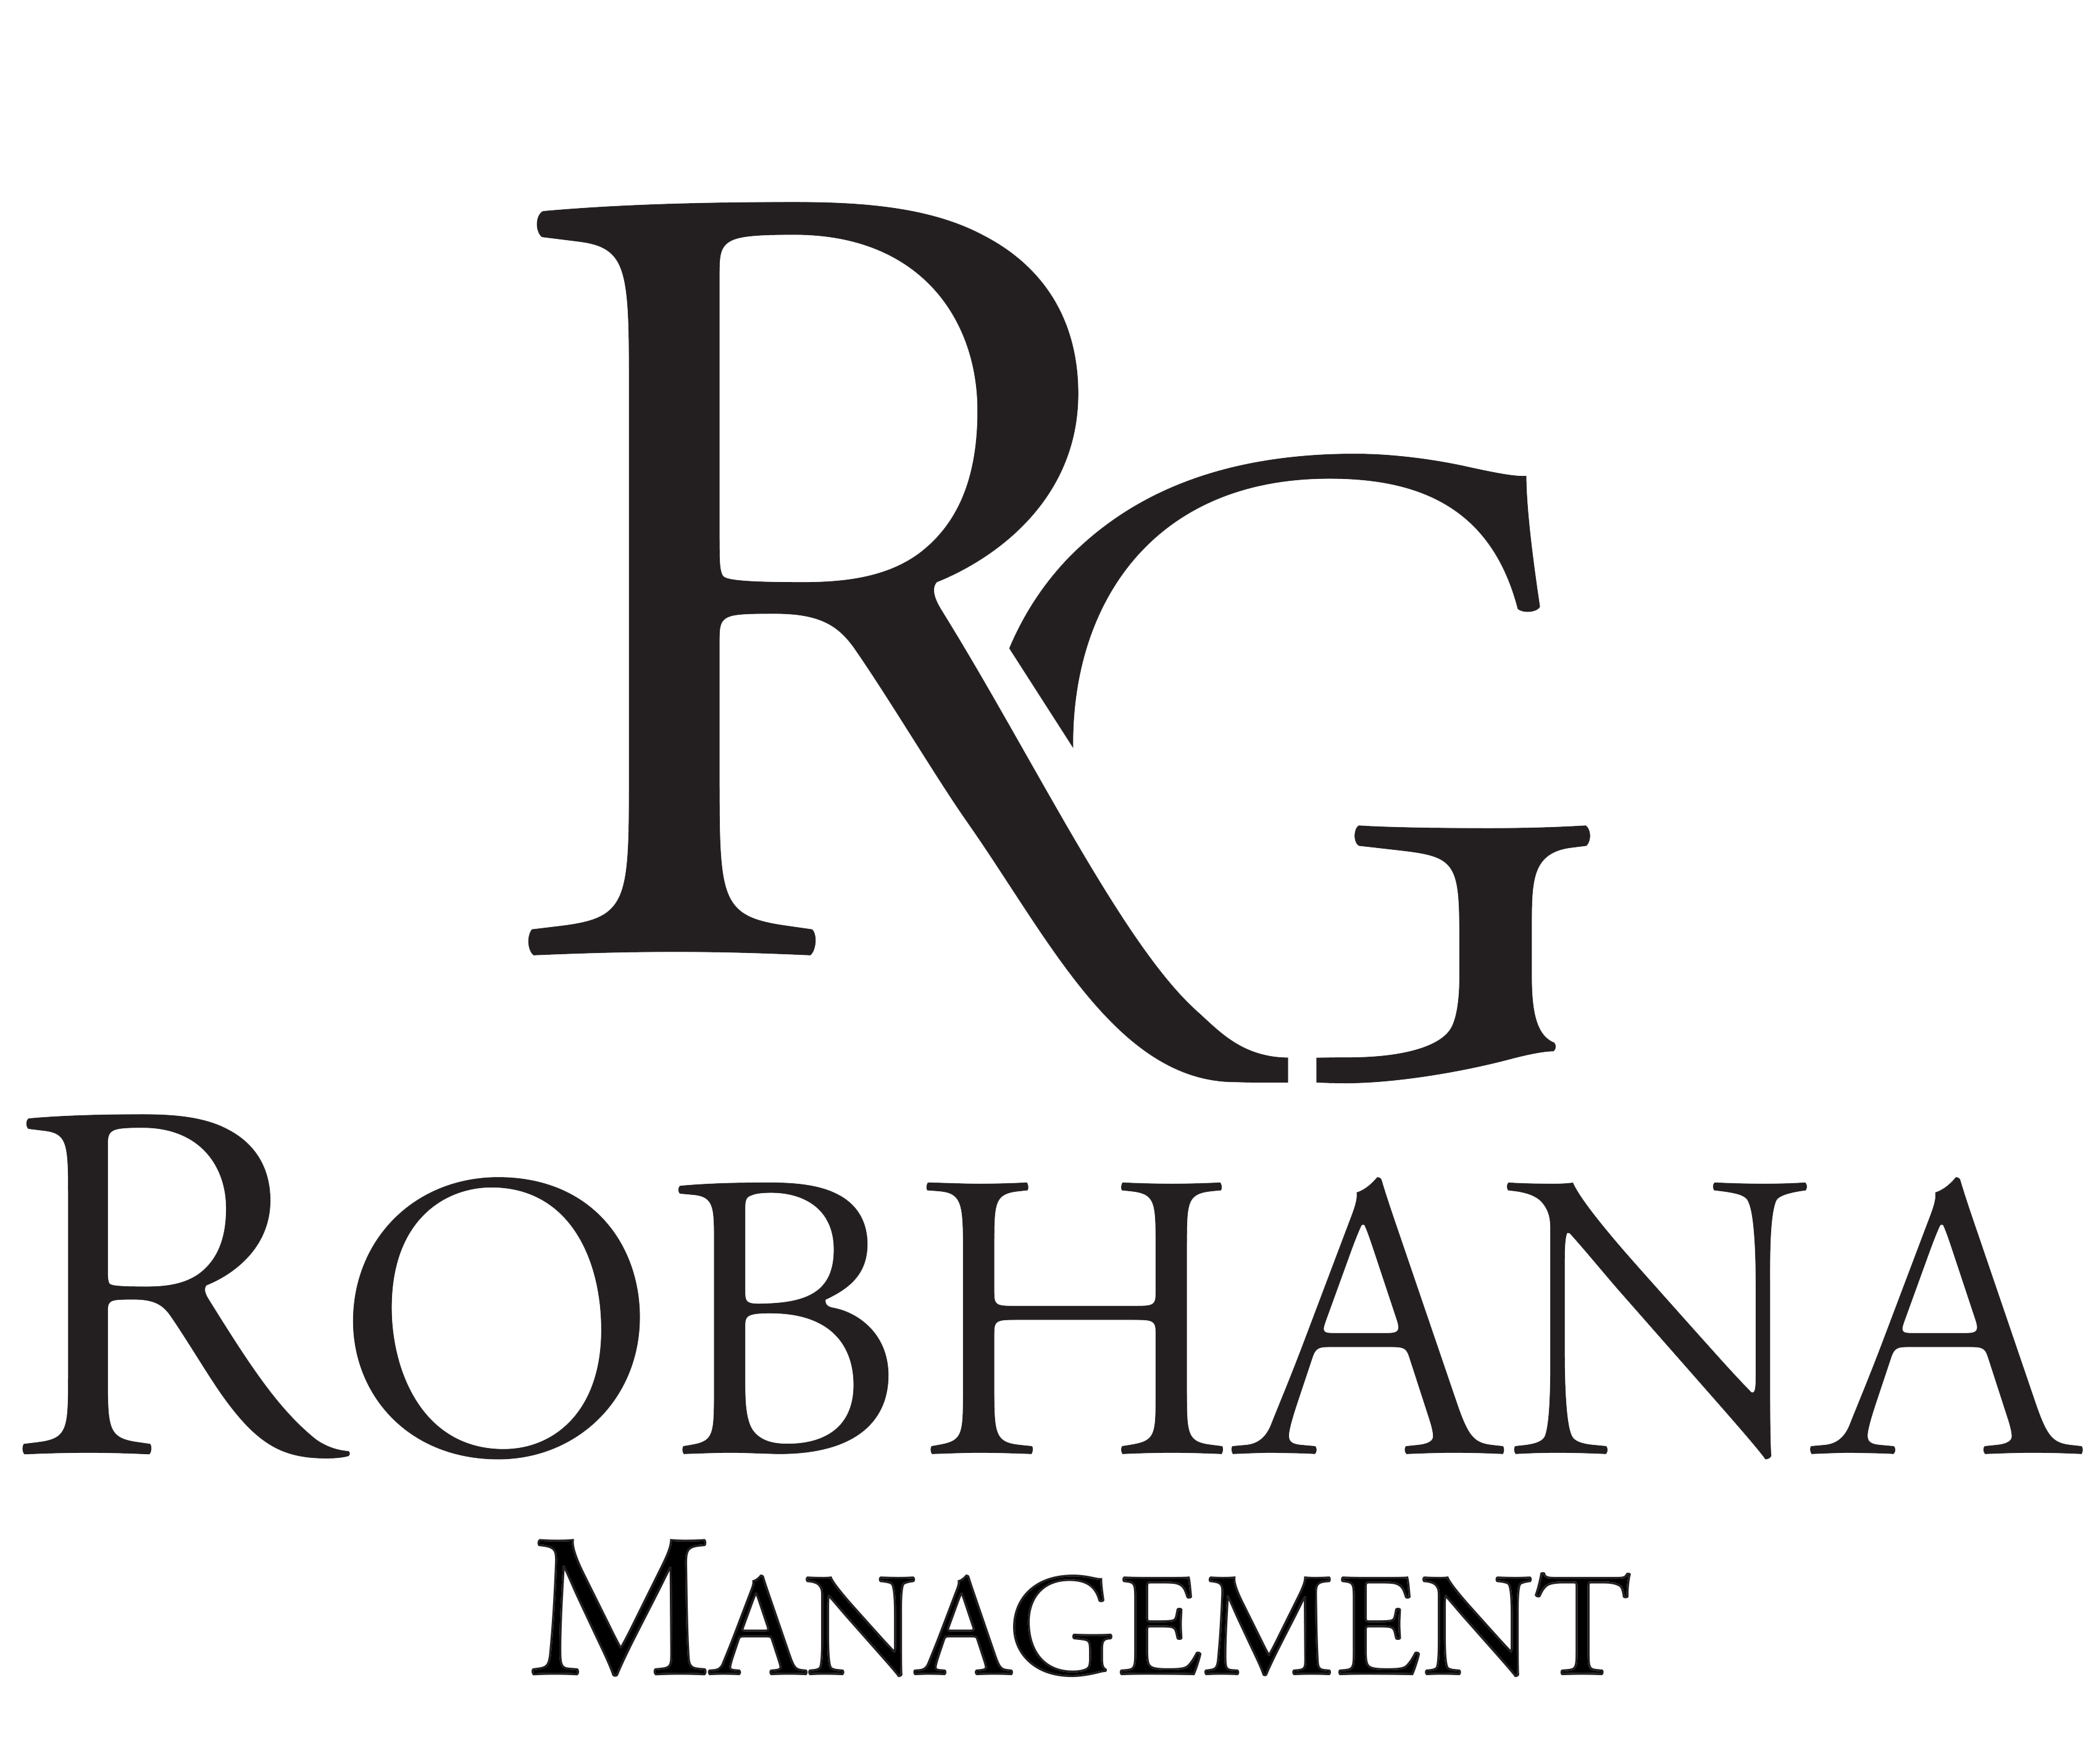 Robhana Management a division of Robhana Group